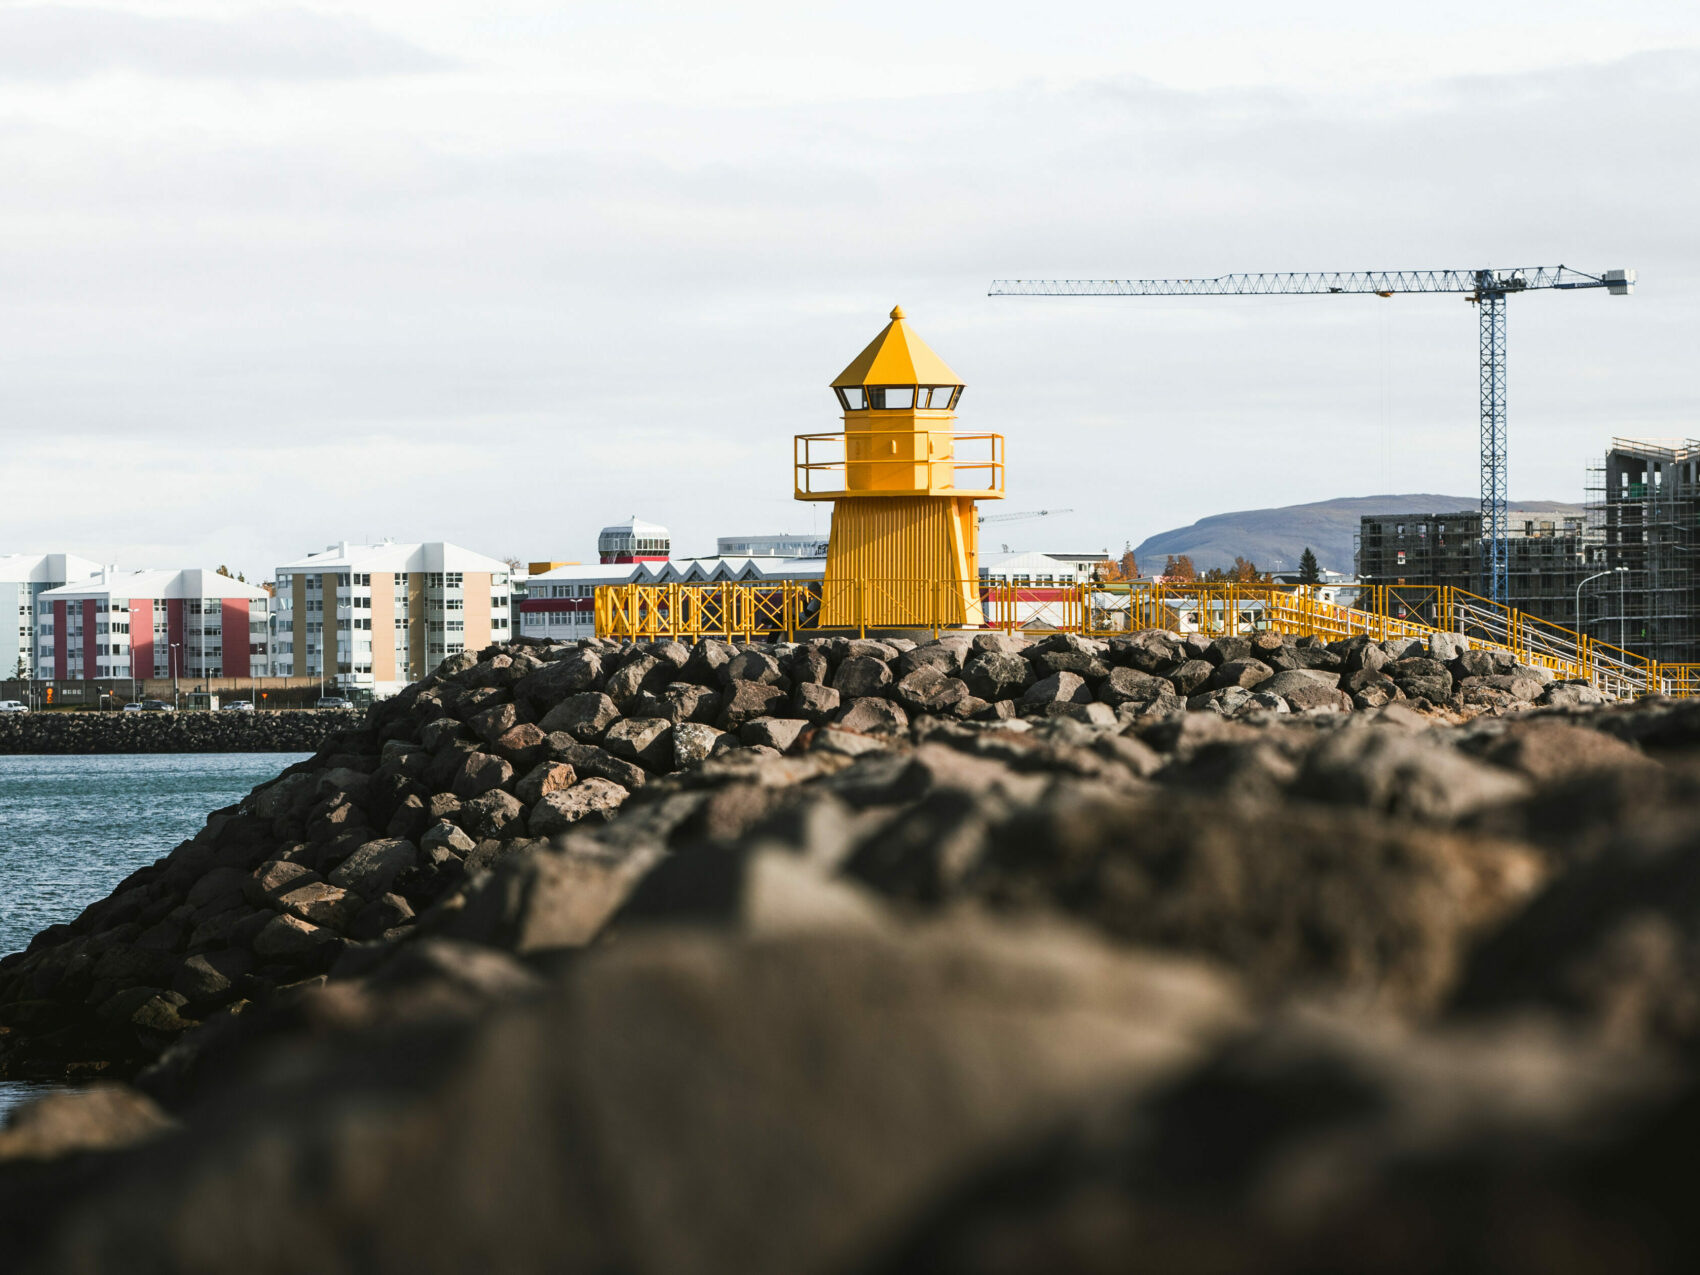 Reykjavík Höfði Leuchtturm, in Gelb auf Steinen - im Hintergrund hohe Gebäude und zwei Krähne